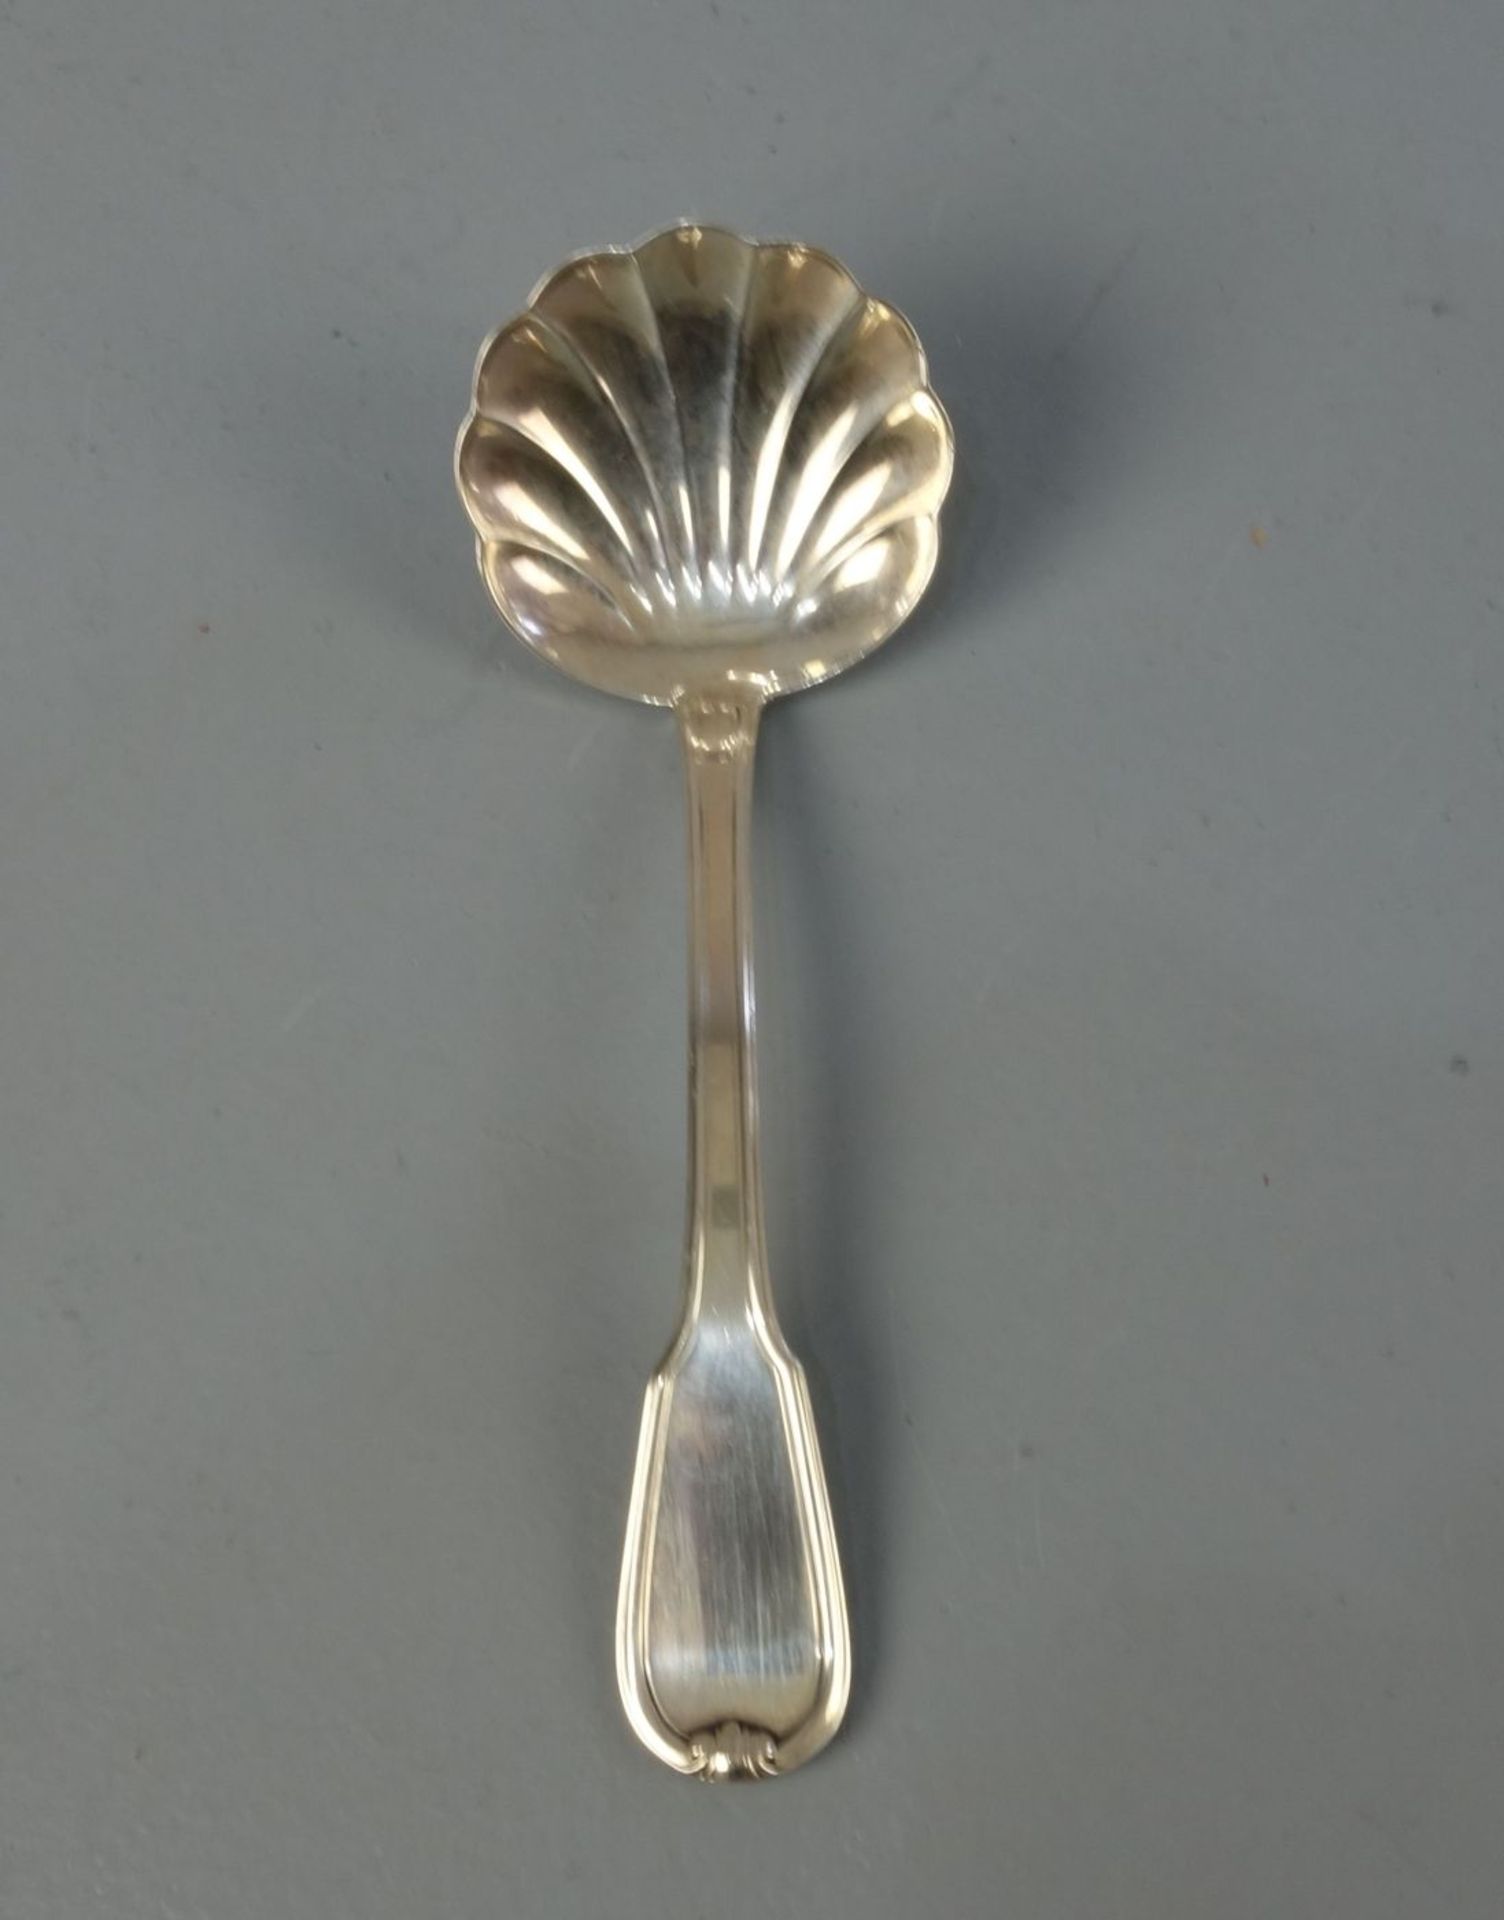 VORLEGEBESTECK: SAHNELÖFFEL / silver cream spoon, Italien, 2. H. 20. Jh., 800er Silber, 31 Gramm.